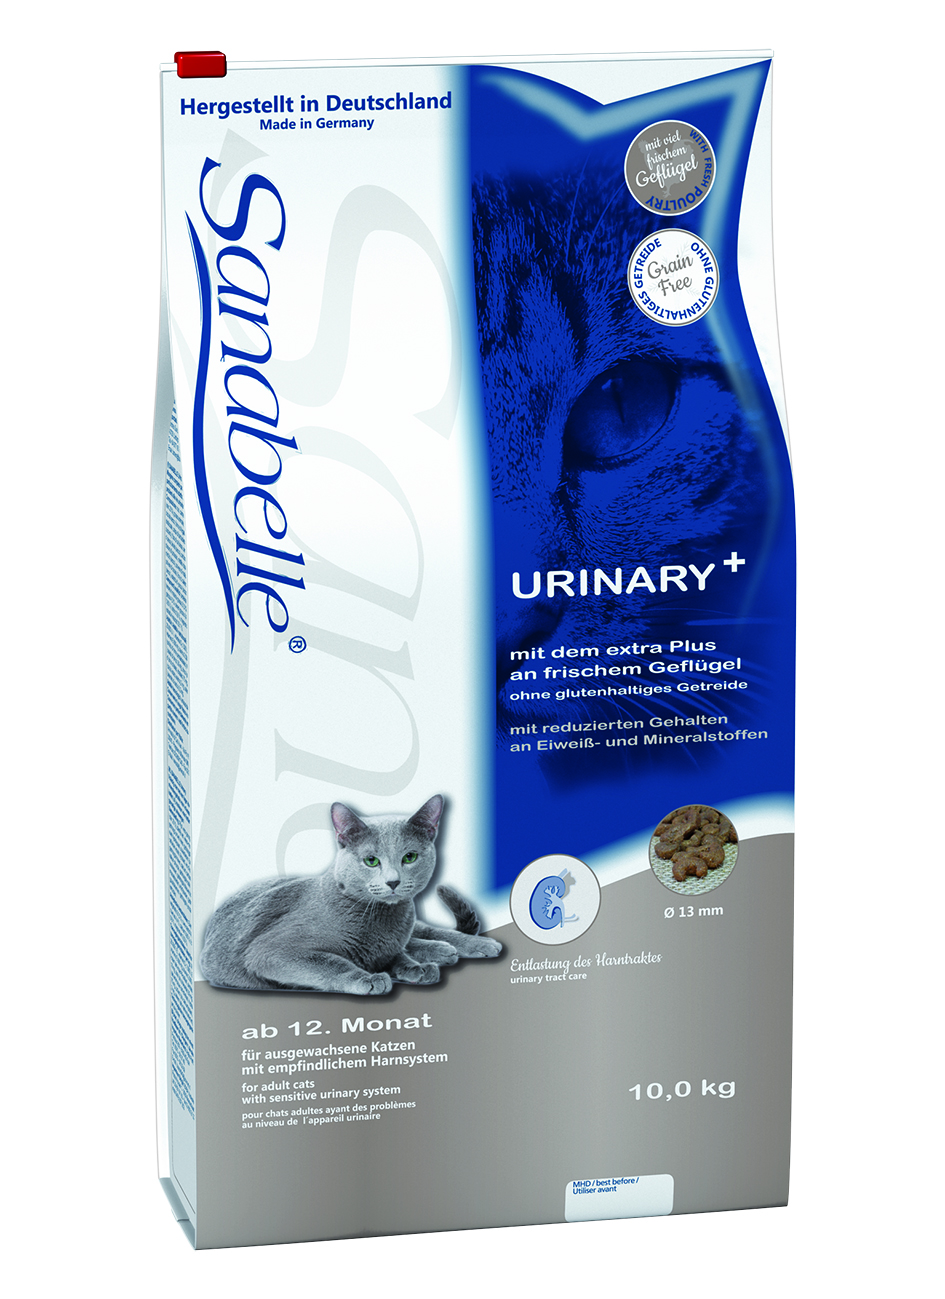 Urinary - Санабель профилактический корм для кошек с чувствительной мочеполовой системой купить в Украине по недорогой цене - зоомагазин ZOOstar